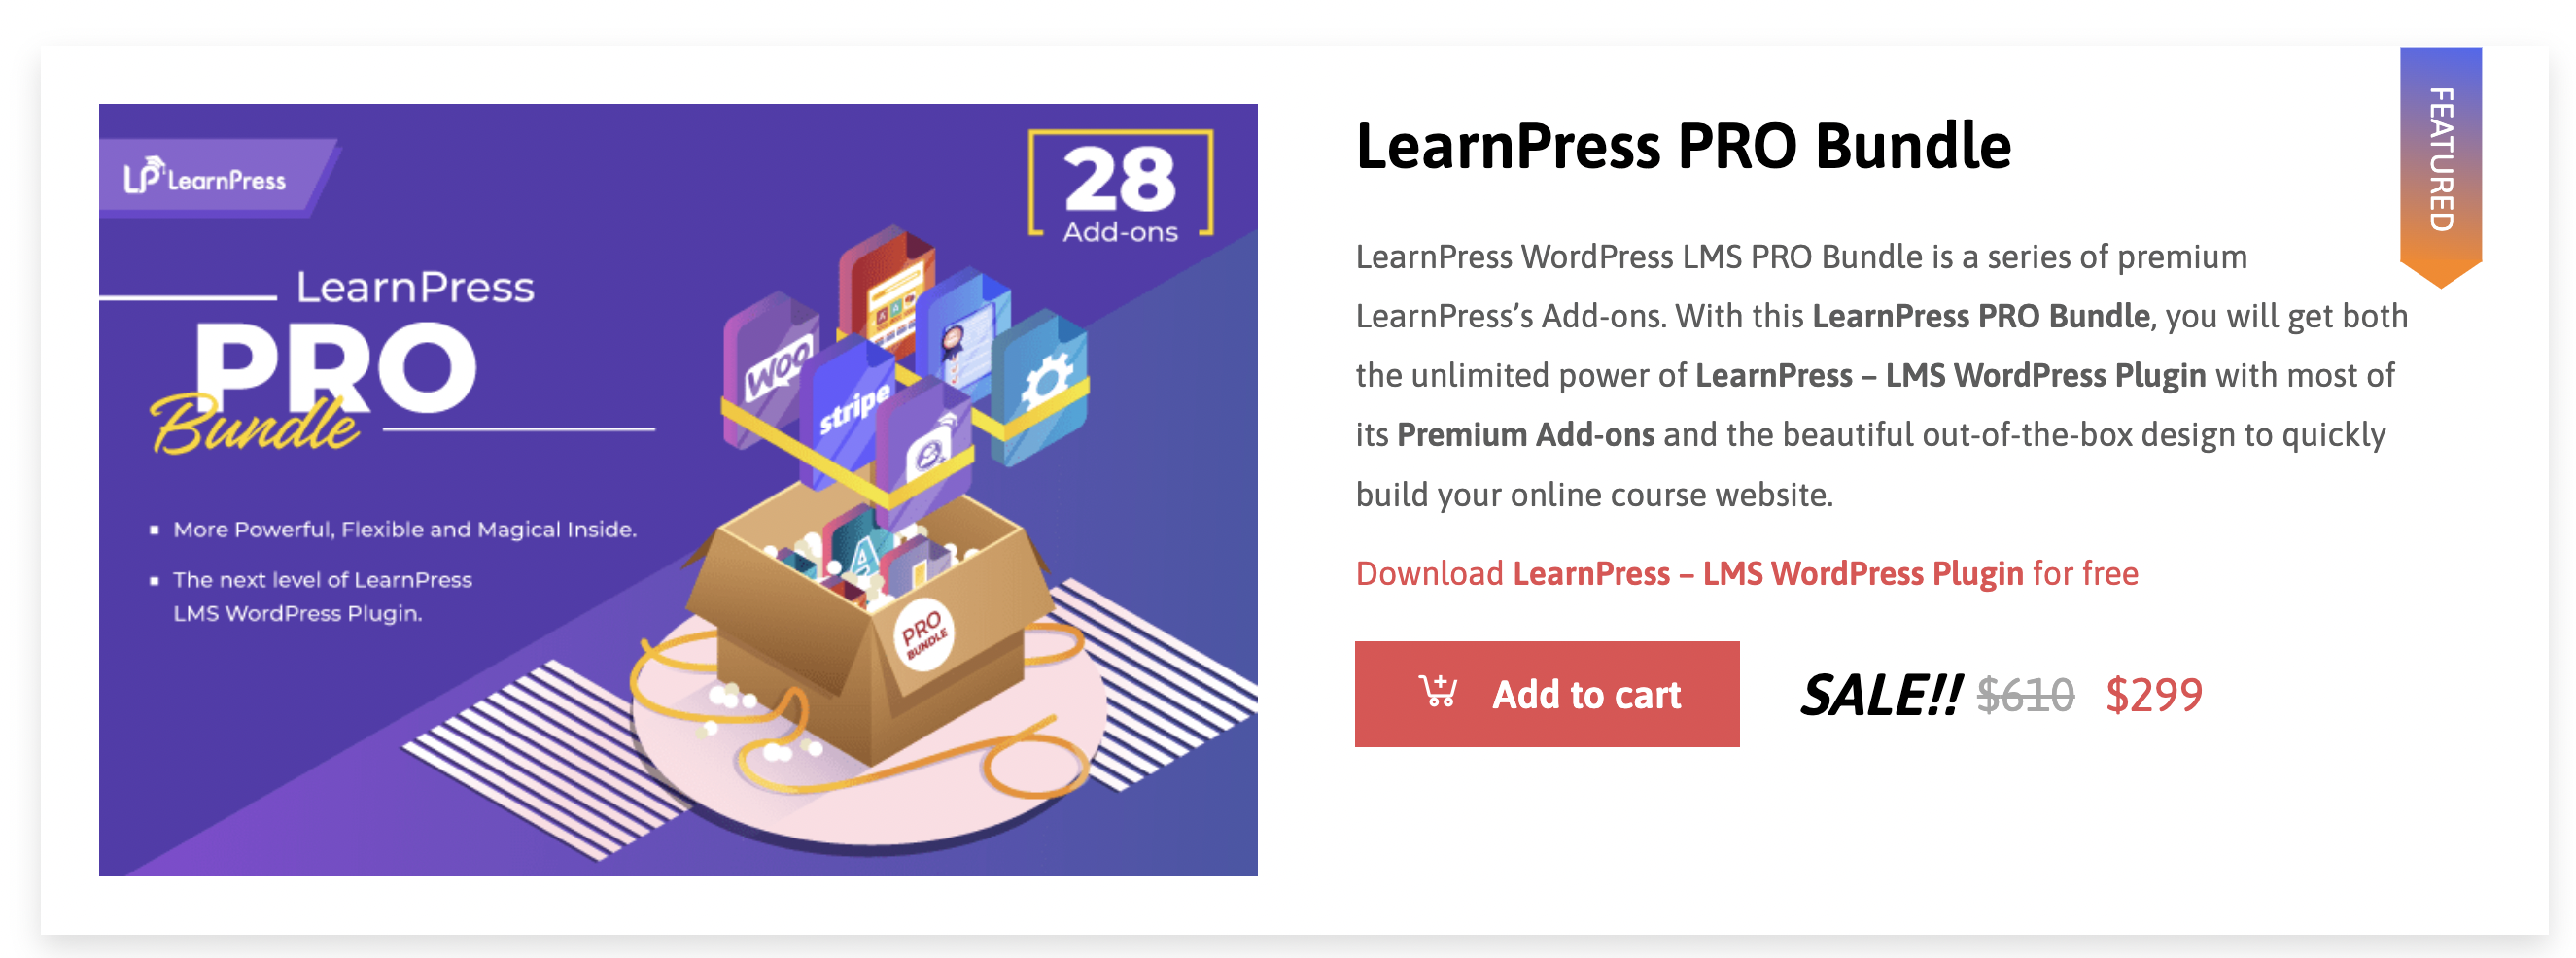 LearnPress gebühr